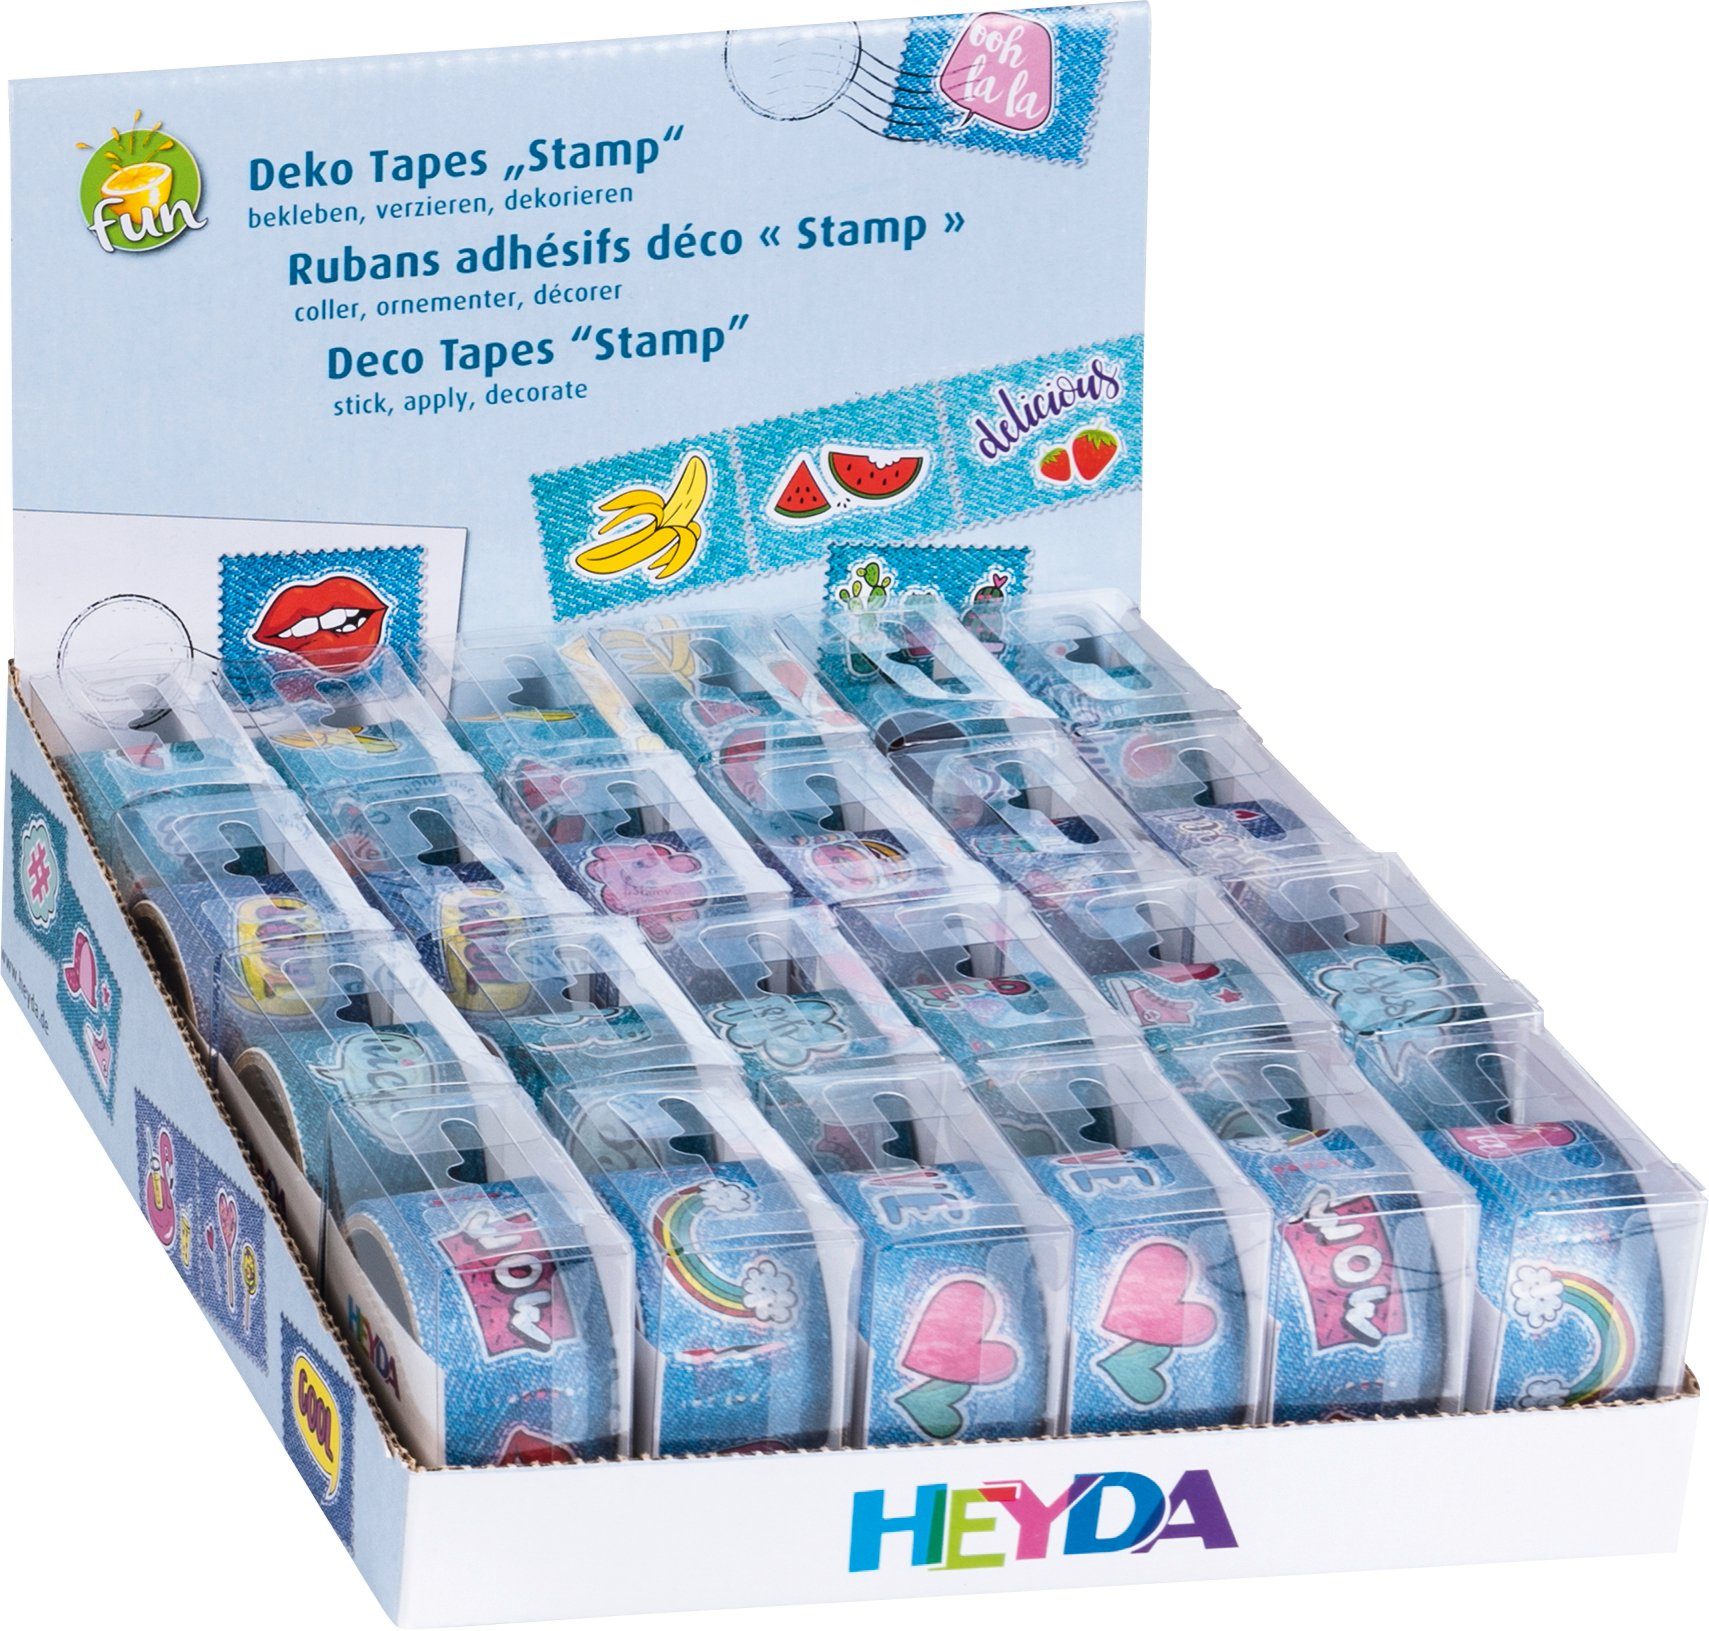 Heyda Klemmen Heyda 203584591 Display Deko Tapes Stamp Rollen 2,4 m x 25,5 mm, Displ